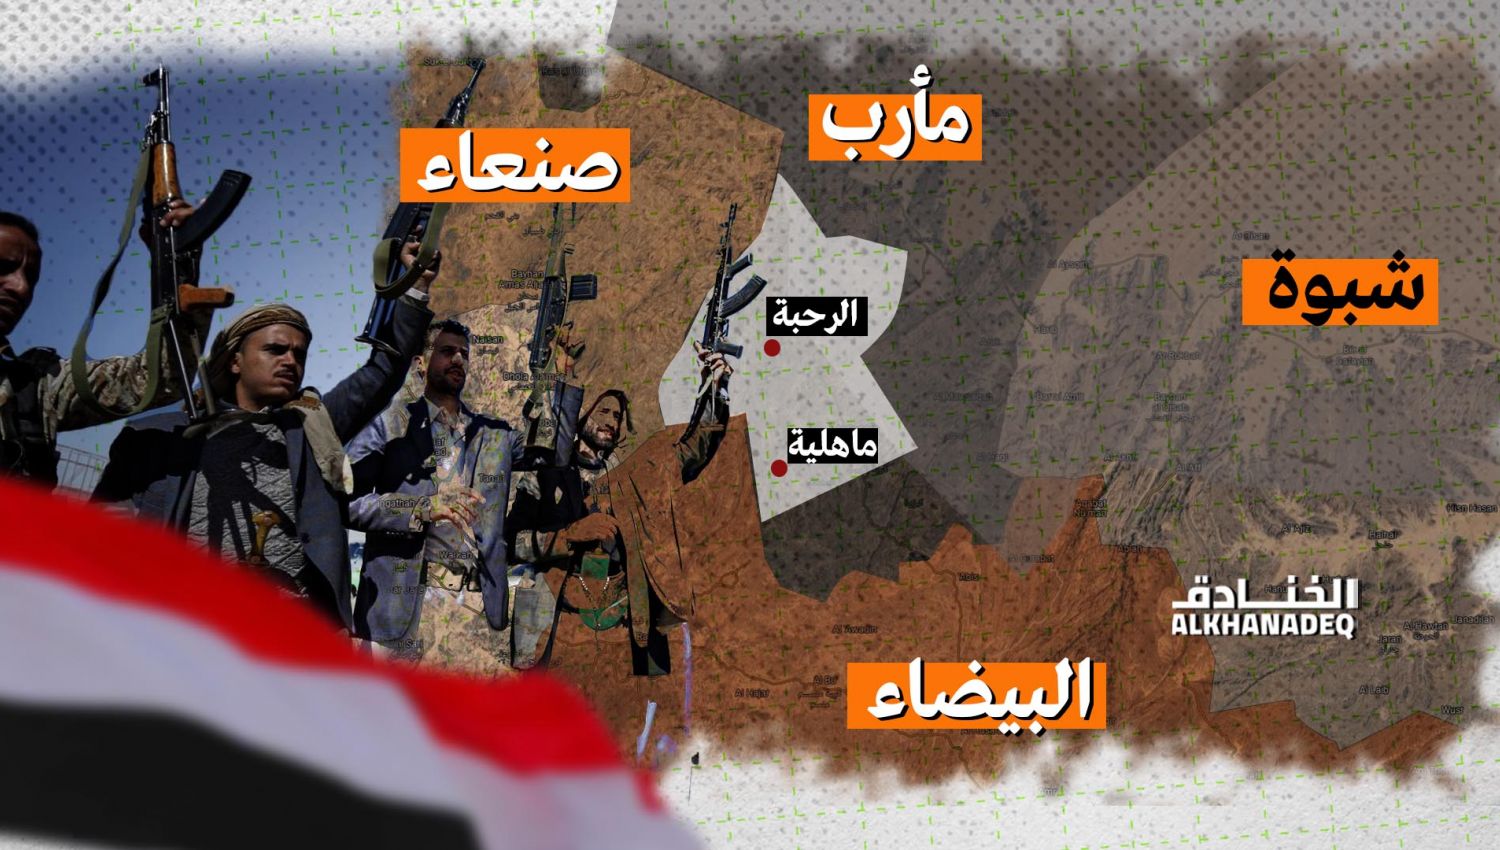 قوات صنعاء تحرر العمق الاستراتيجي لمأرب